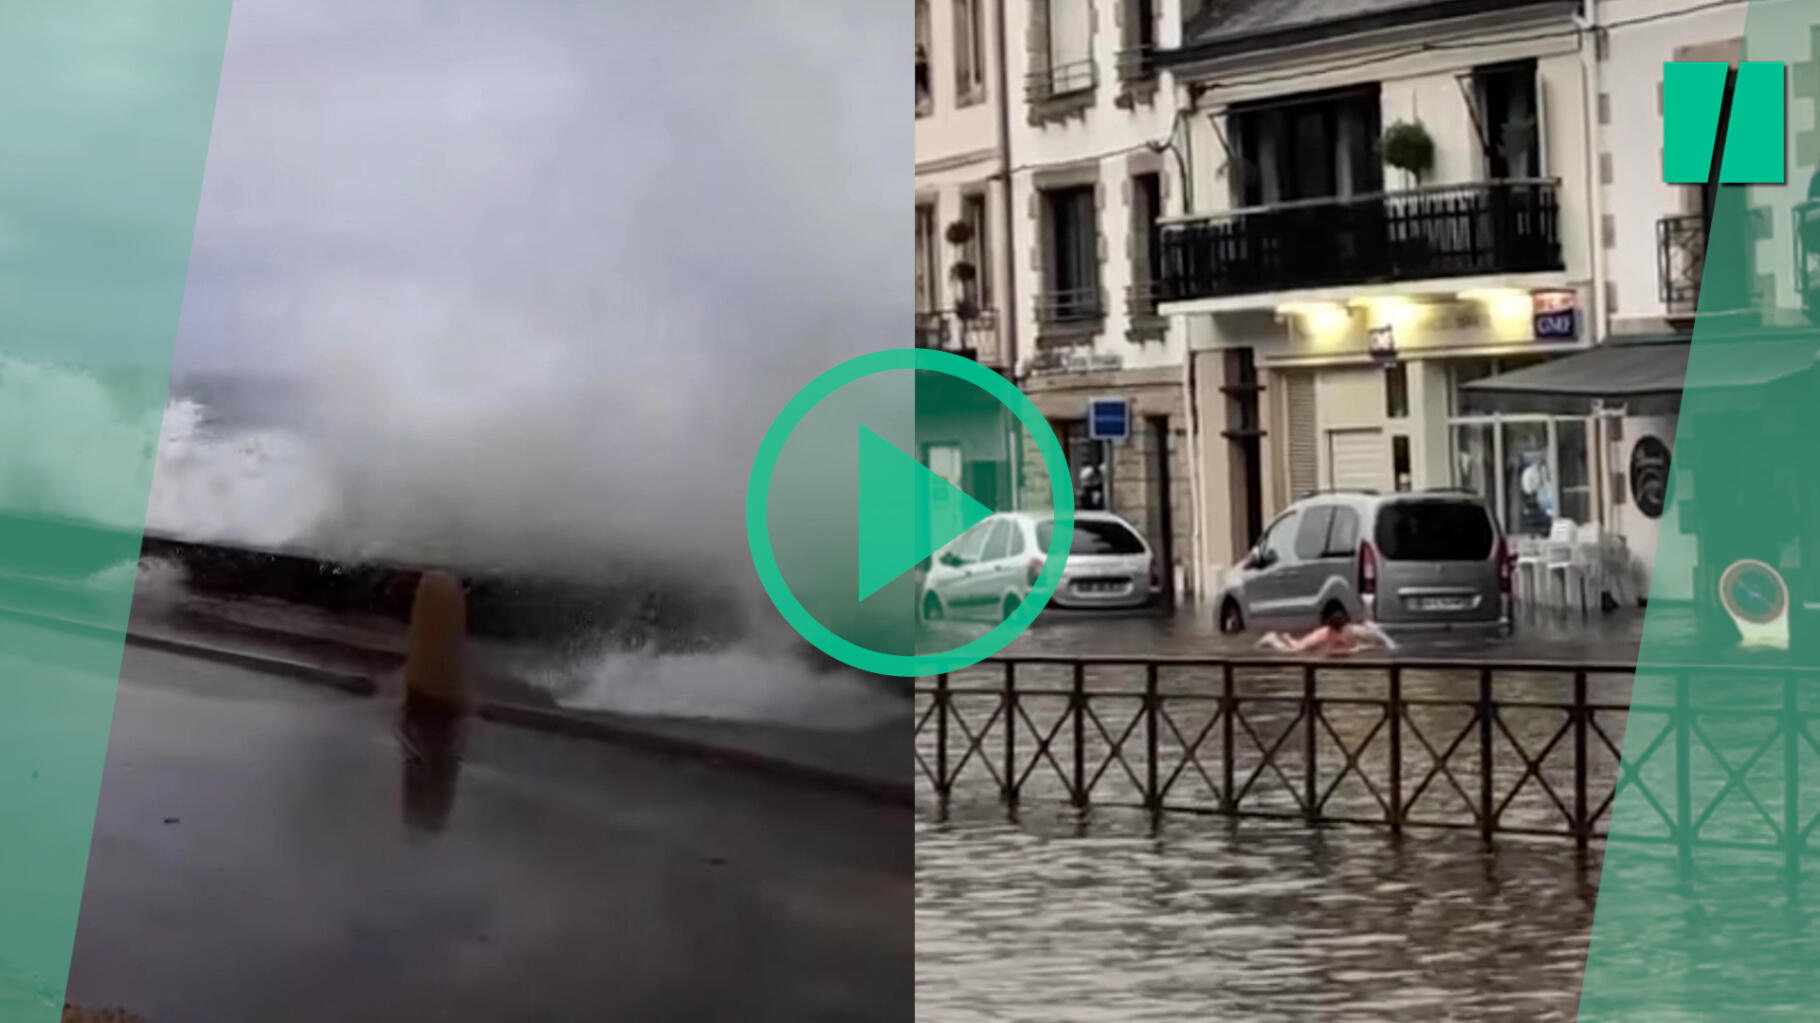   Tempête Céline : les images de l’ouest de la France les pieds dans l’eau après les fortes pluies  